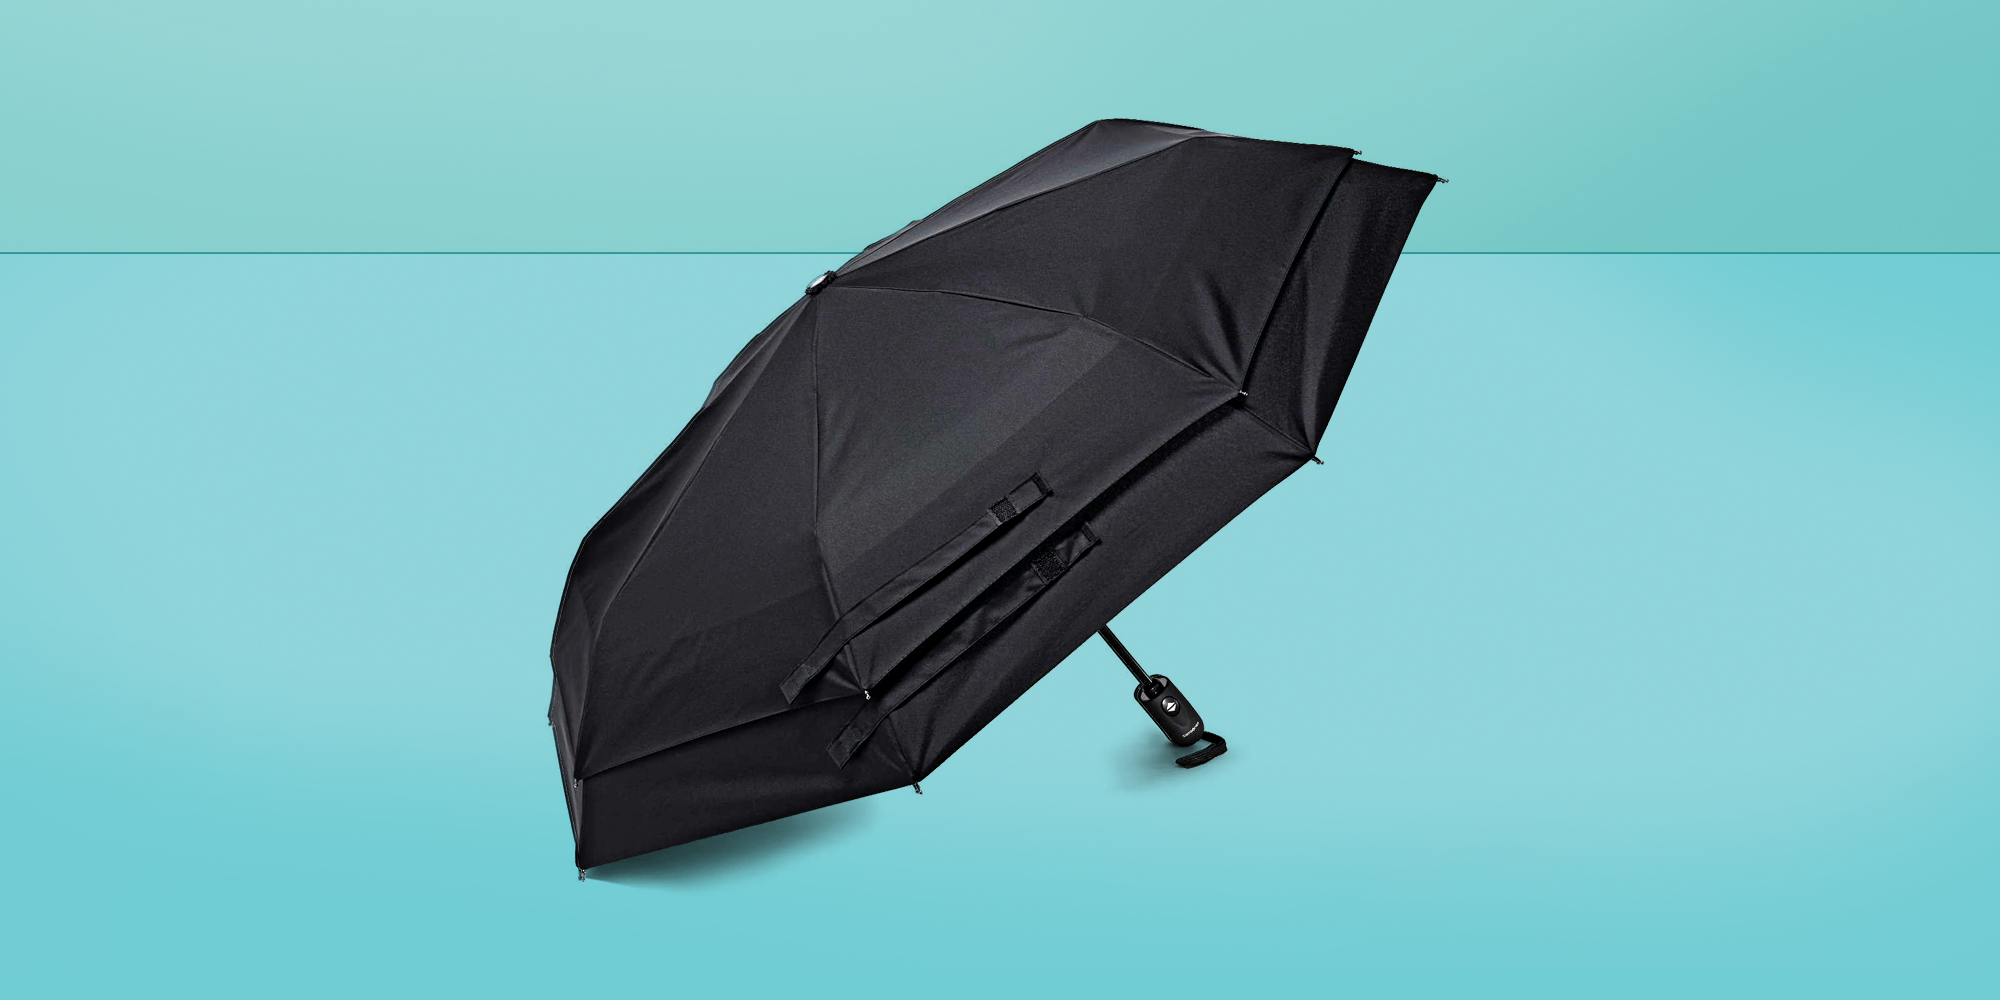 25 Company Umbrellas For Every Budget